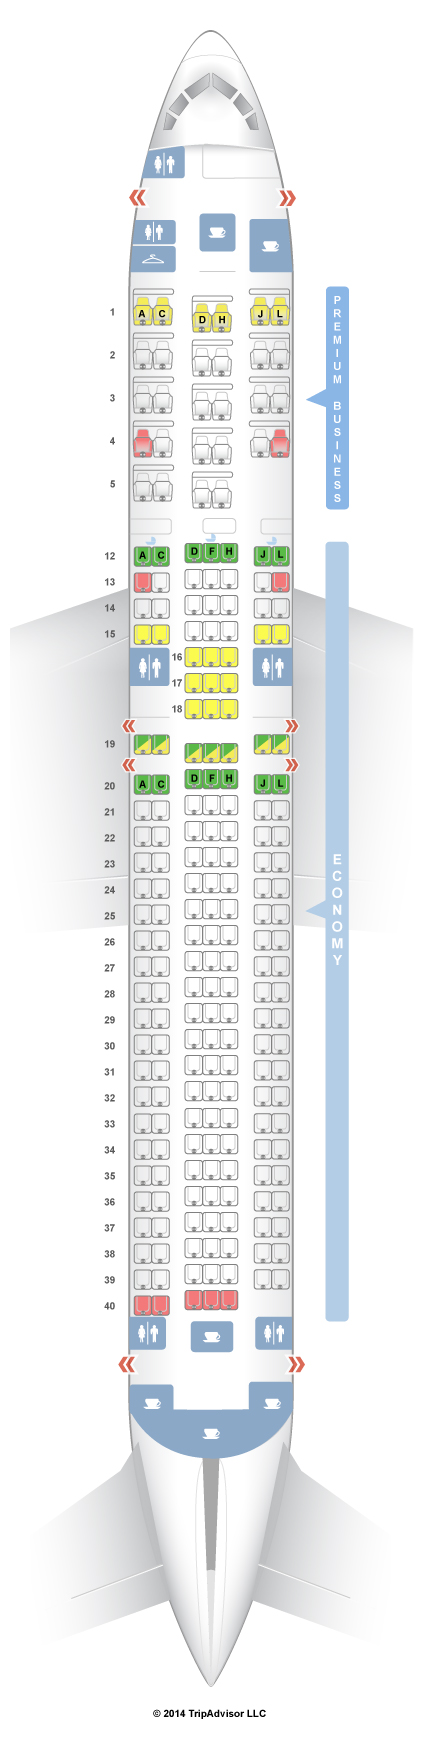 Delta Flight 2469 Seating Chart